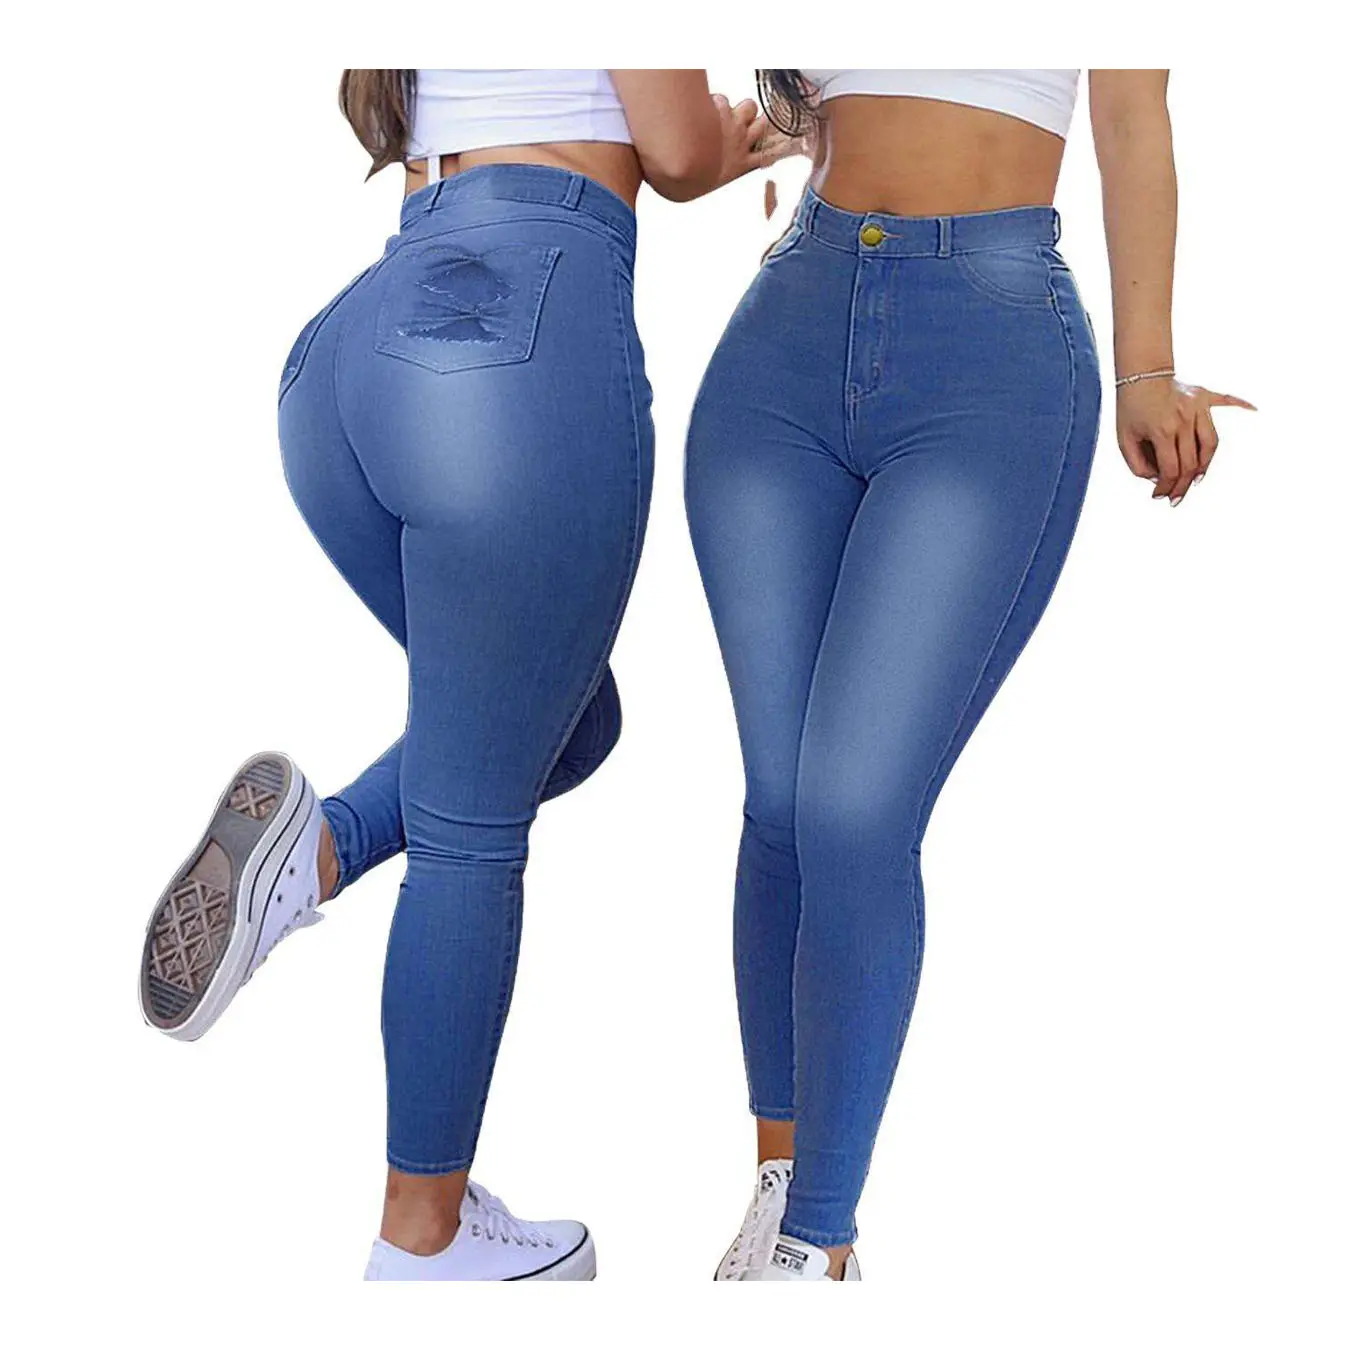 Grote Maat Jeans Voor Dikke Vrouwen Usa 2xl-8xl Maten Denim Jeans Voor Dames Dames Jeans